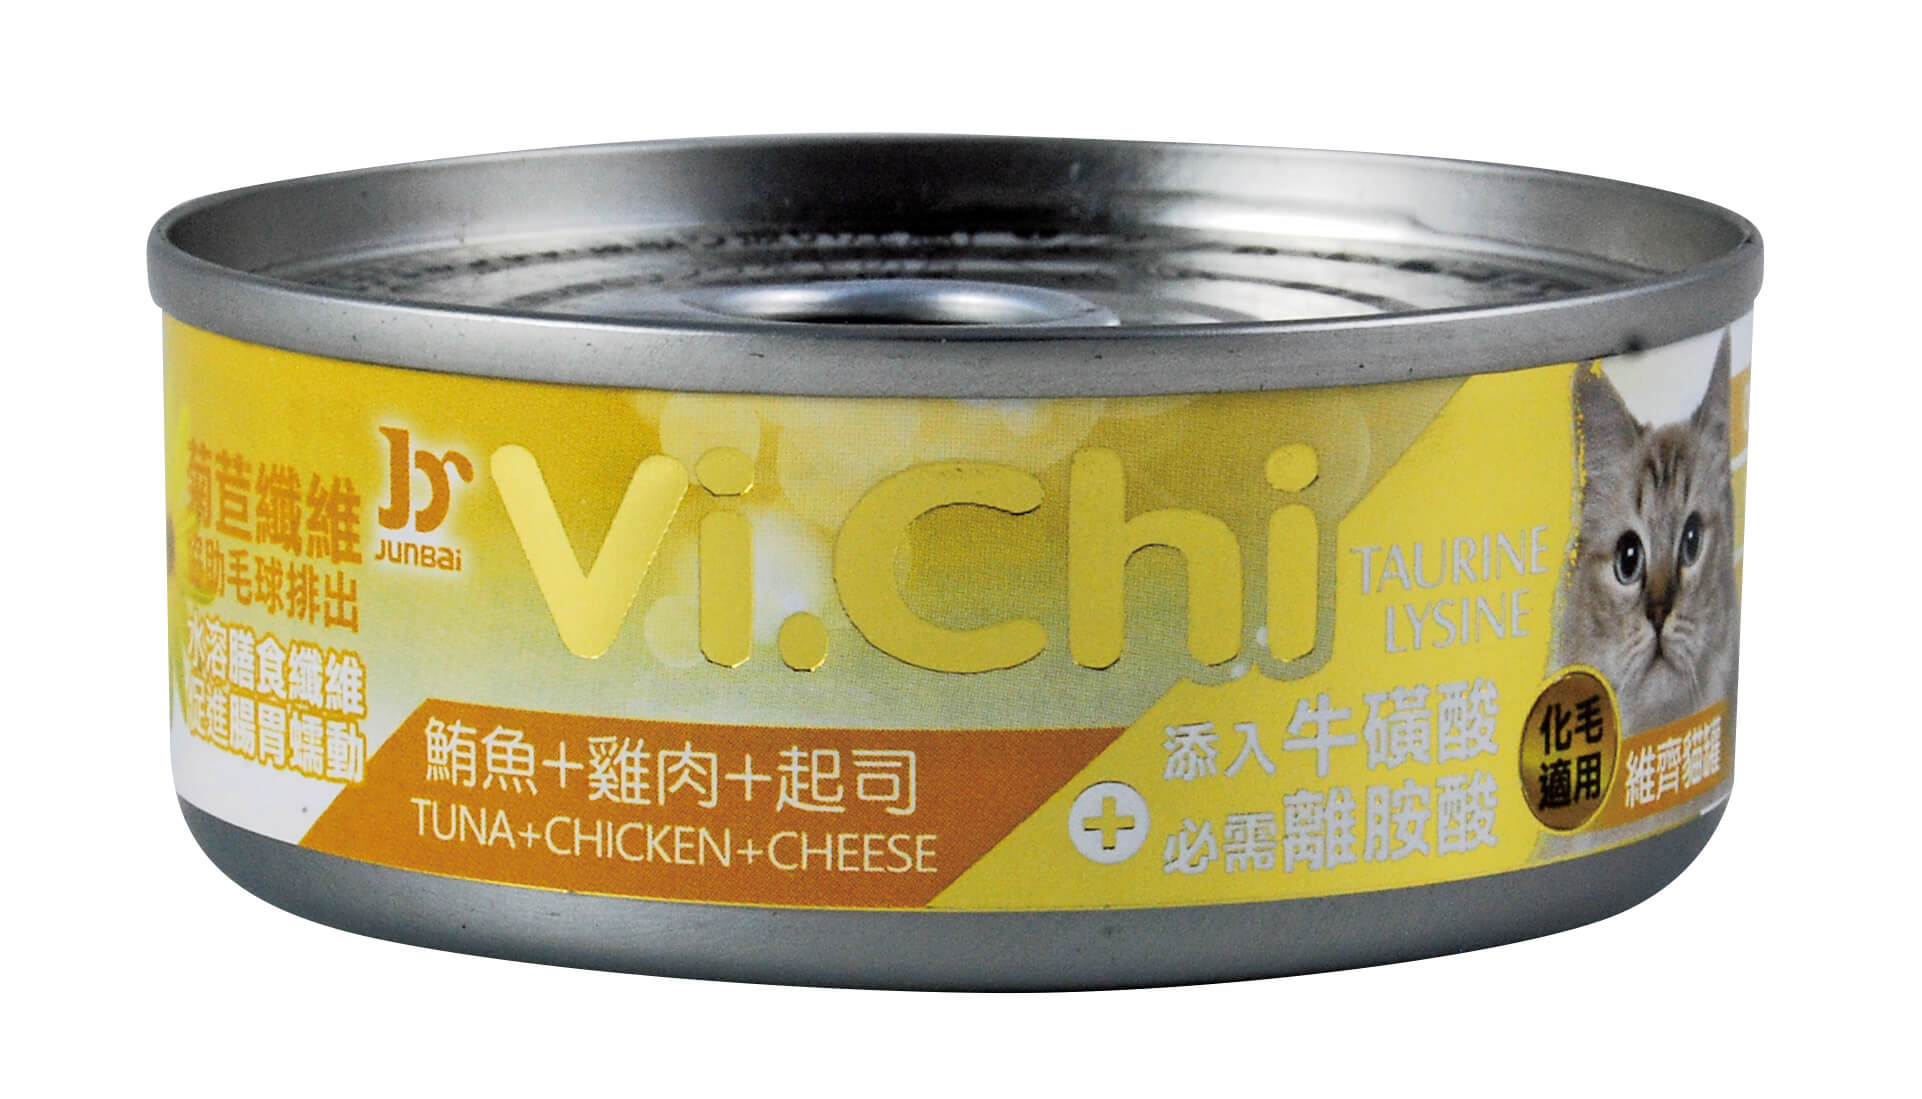 維齊貓罐-鮪魚+雞肉+起司
Vi.Chi cat can-tuna+chicken+cheese